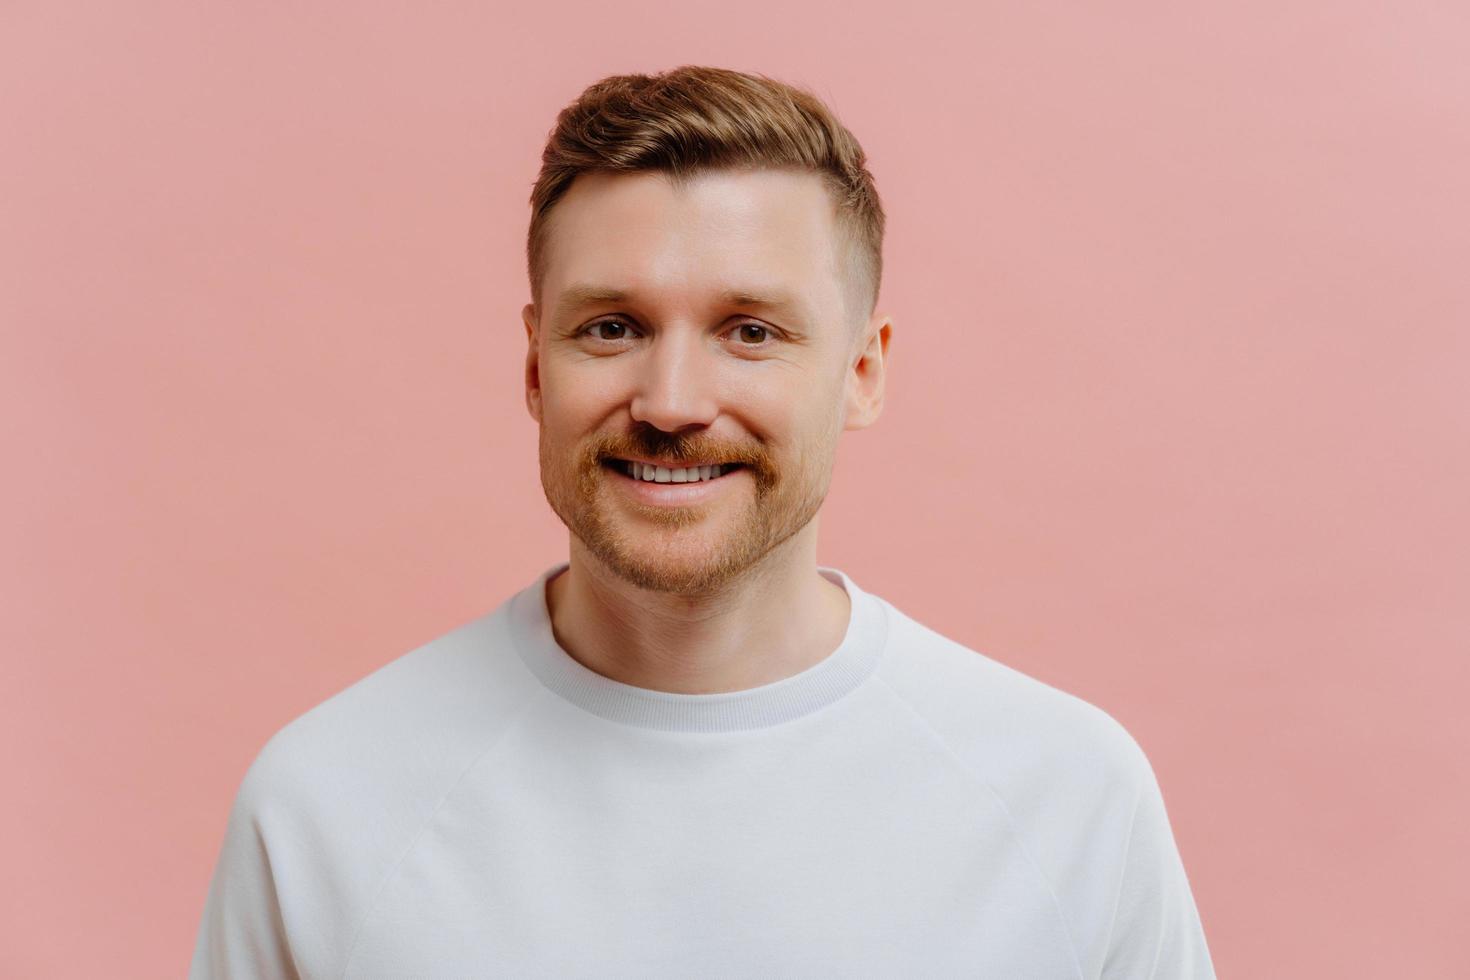 jonge positieve man die lacht op camera in roze studio achtergrond foto